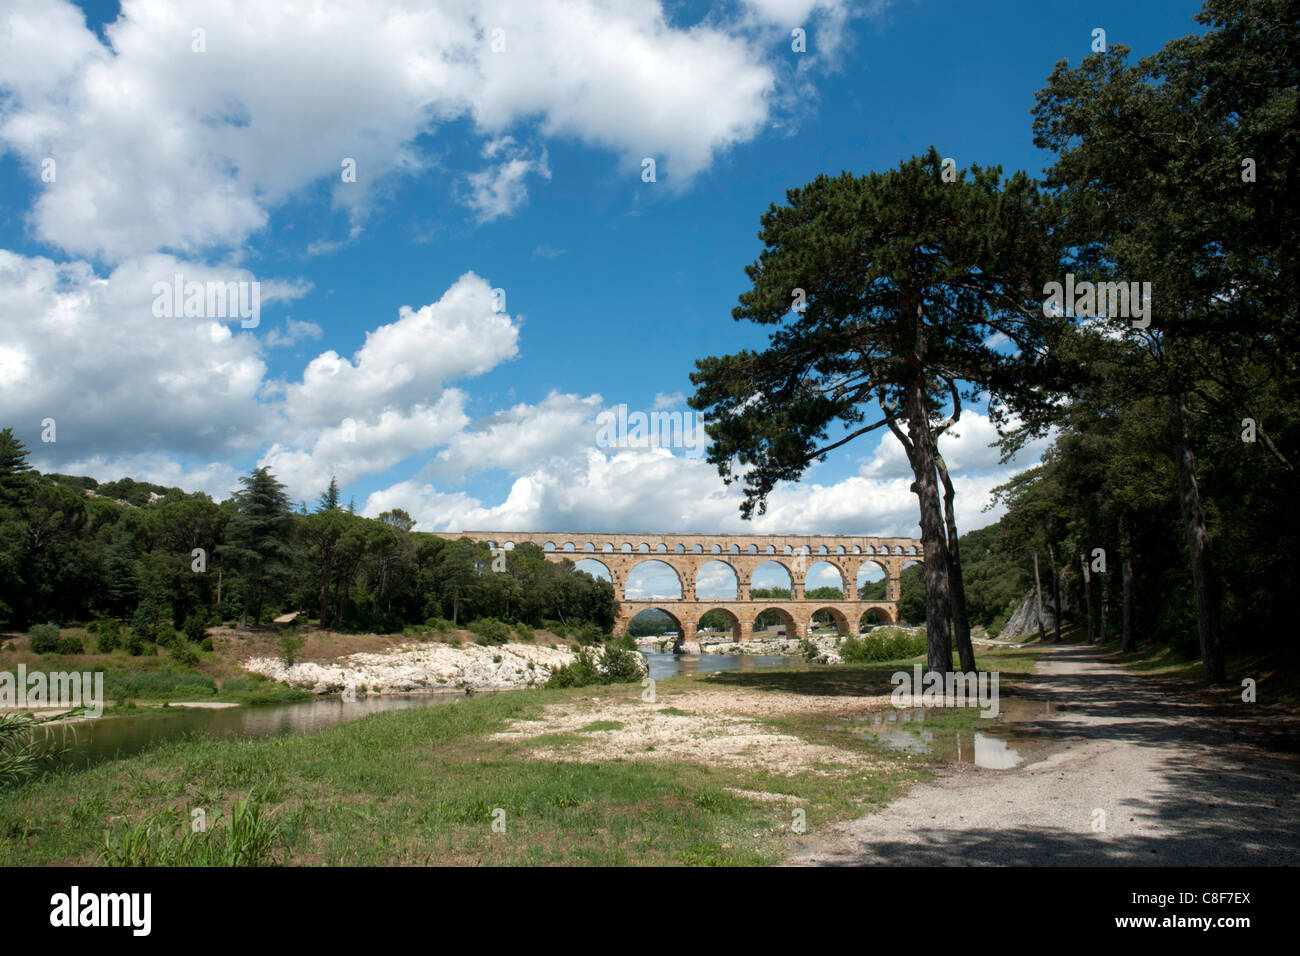 La France, Gard, Languedoc-Roussillion, Pont du Gard, aqueduc romain,, pont, Pont du Gard, de l'architecture, les ponts, le lieu d'intere Banque D'Images